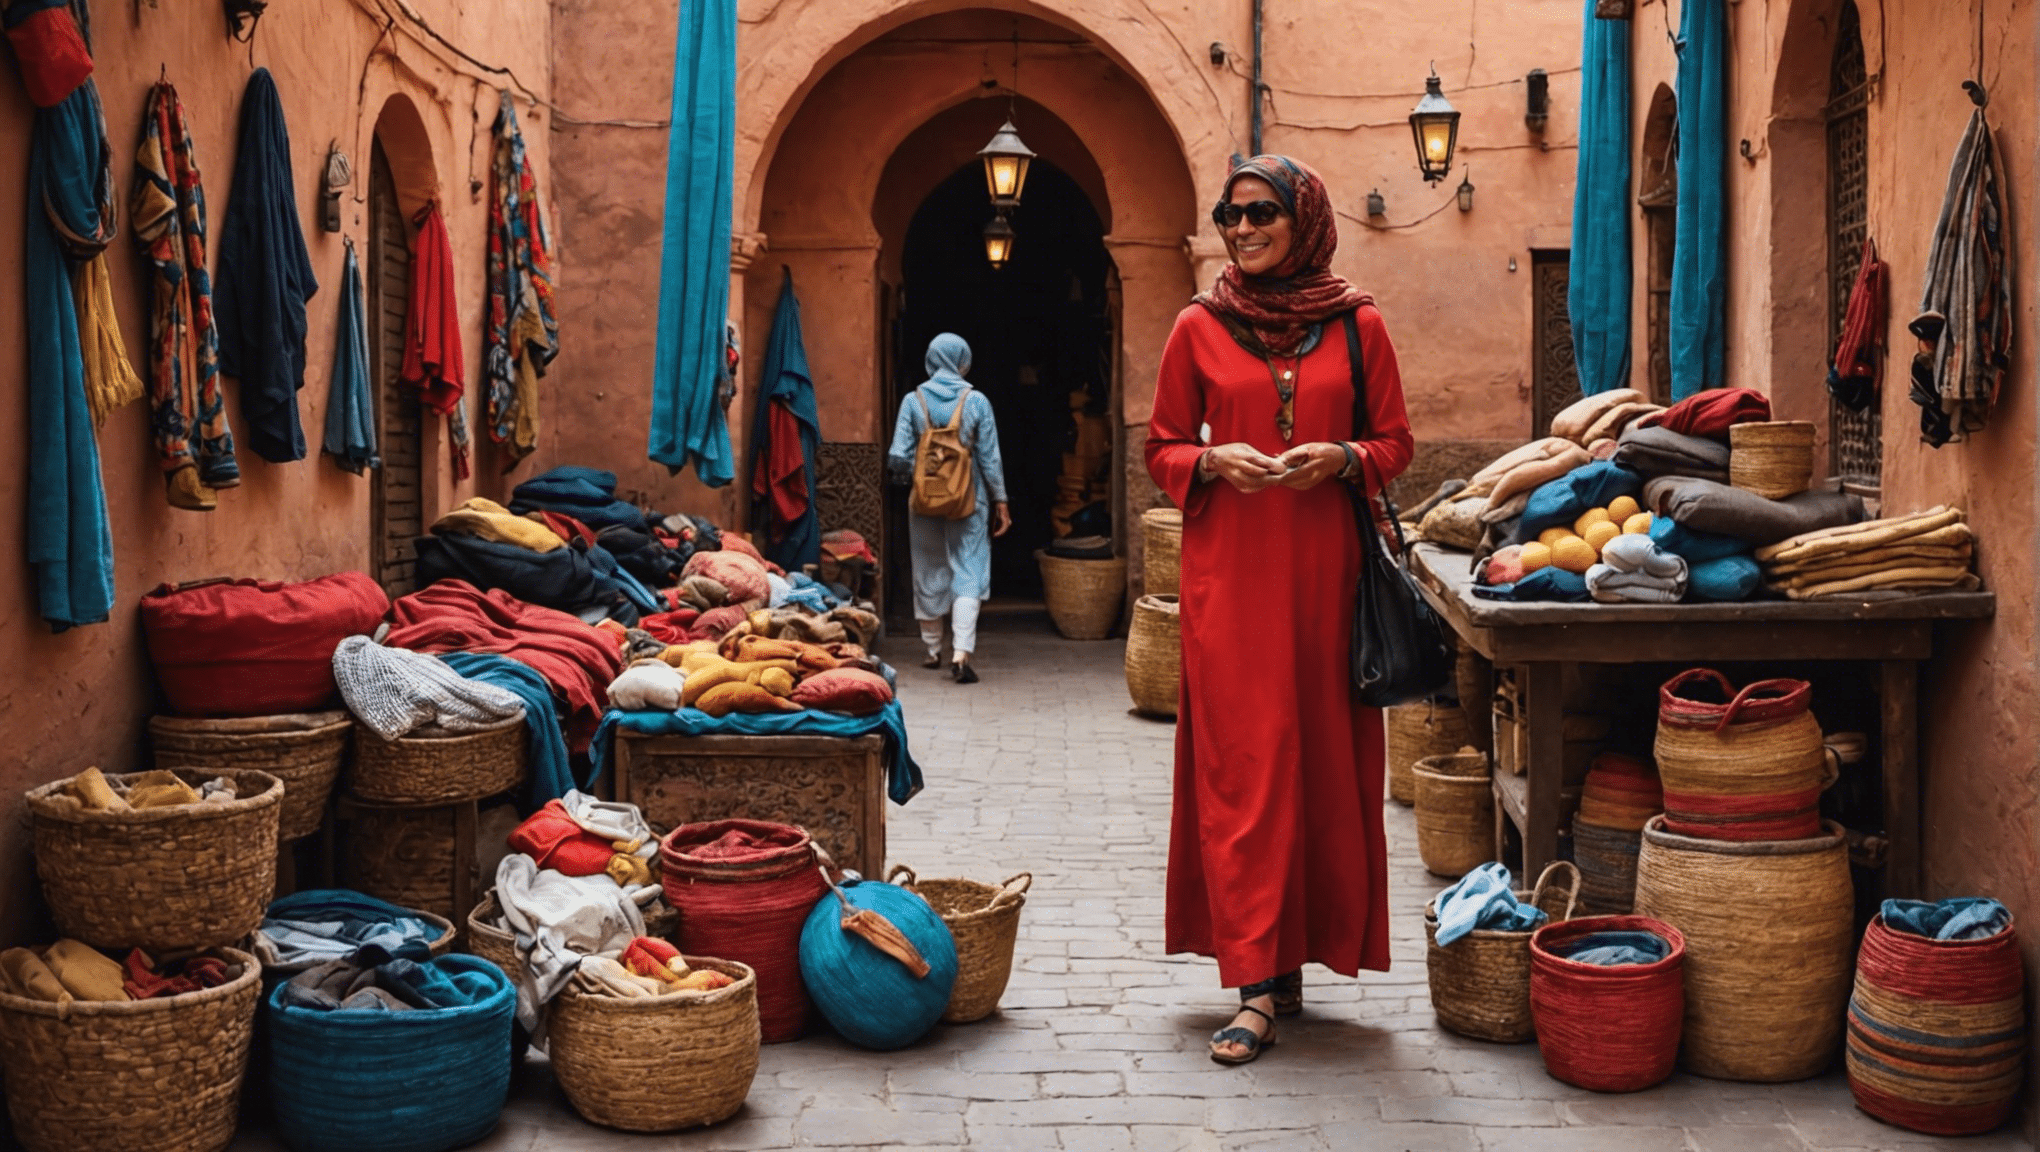 découvrez les essentiels à emporter pour votre ultime aventure à Marrakech en avril et profitez au maximum de votre voyage grâce à nos conseils et suggestions utiles.